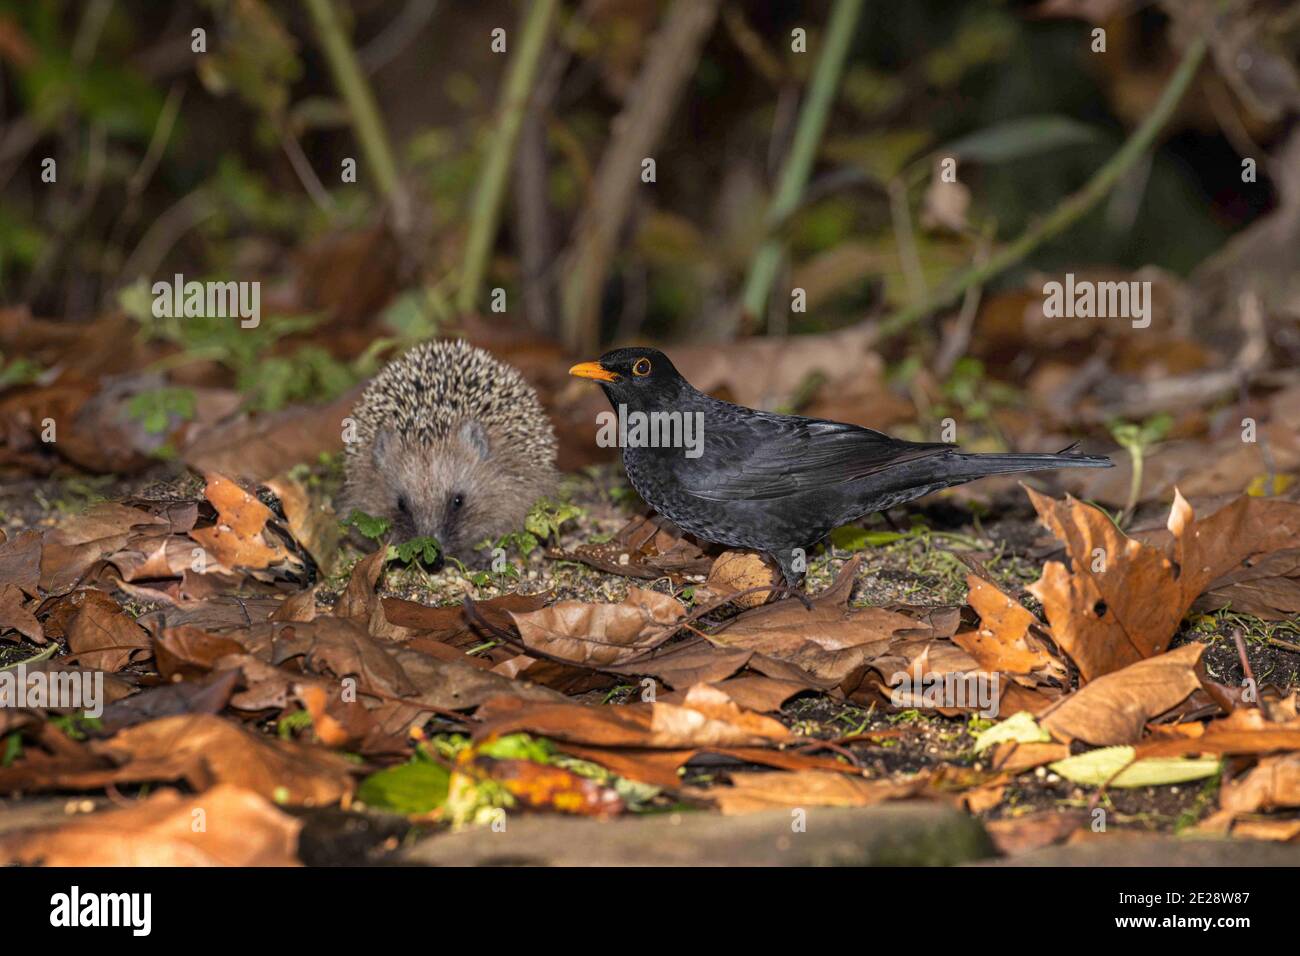 Hedgehog occidental, hedgehog europeo (Erinaceus europaeus), junto con un ave negra macho en el follaje otoñal, Alemania, Baviera Foto de stock